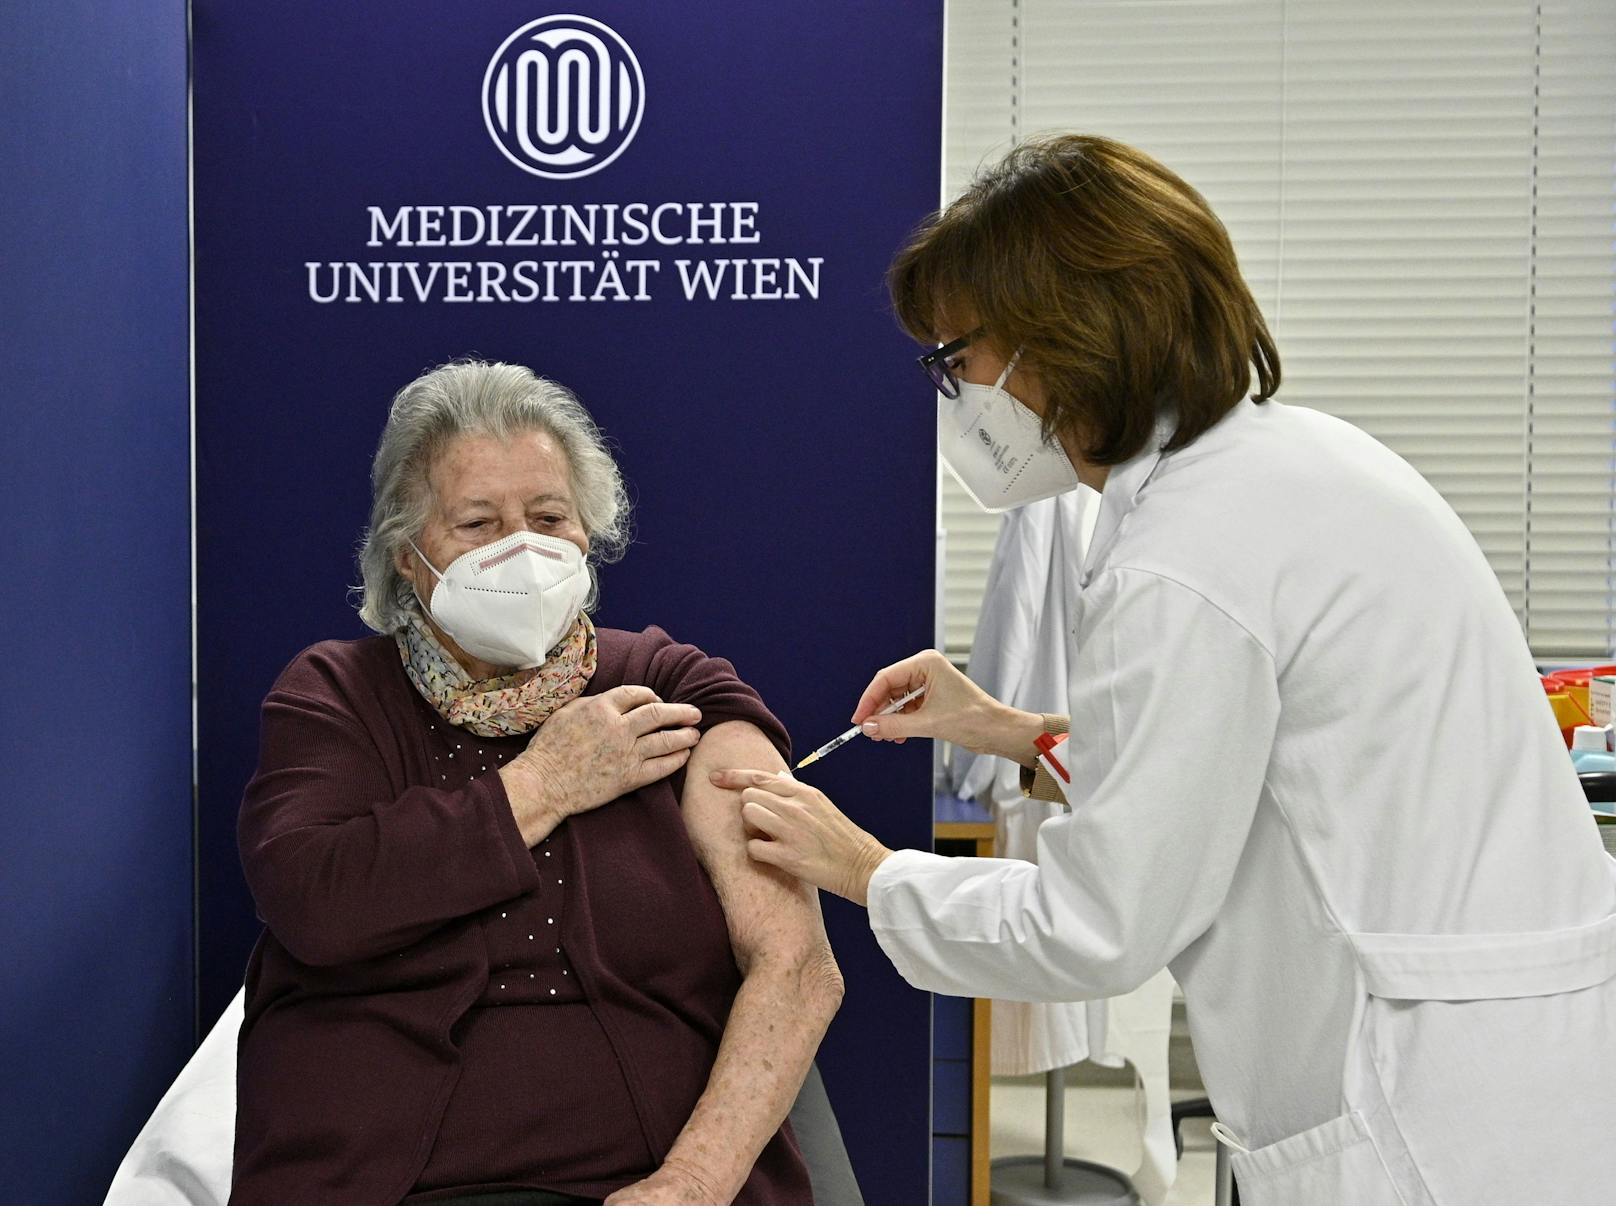 Ende 2020 starteten die Impfungen in Österreich.